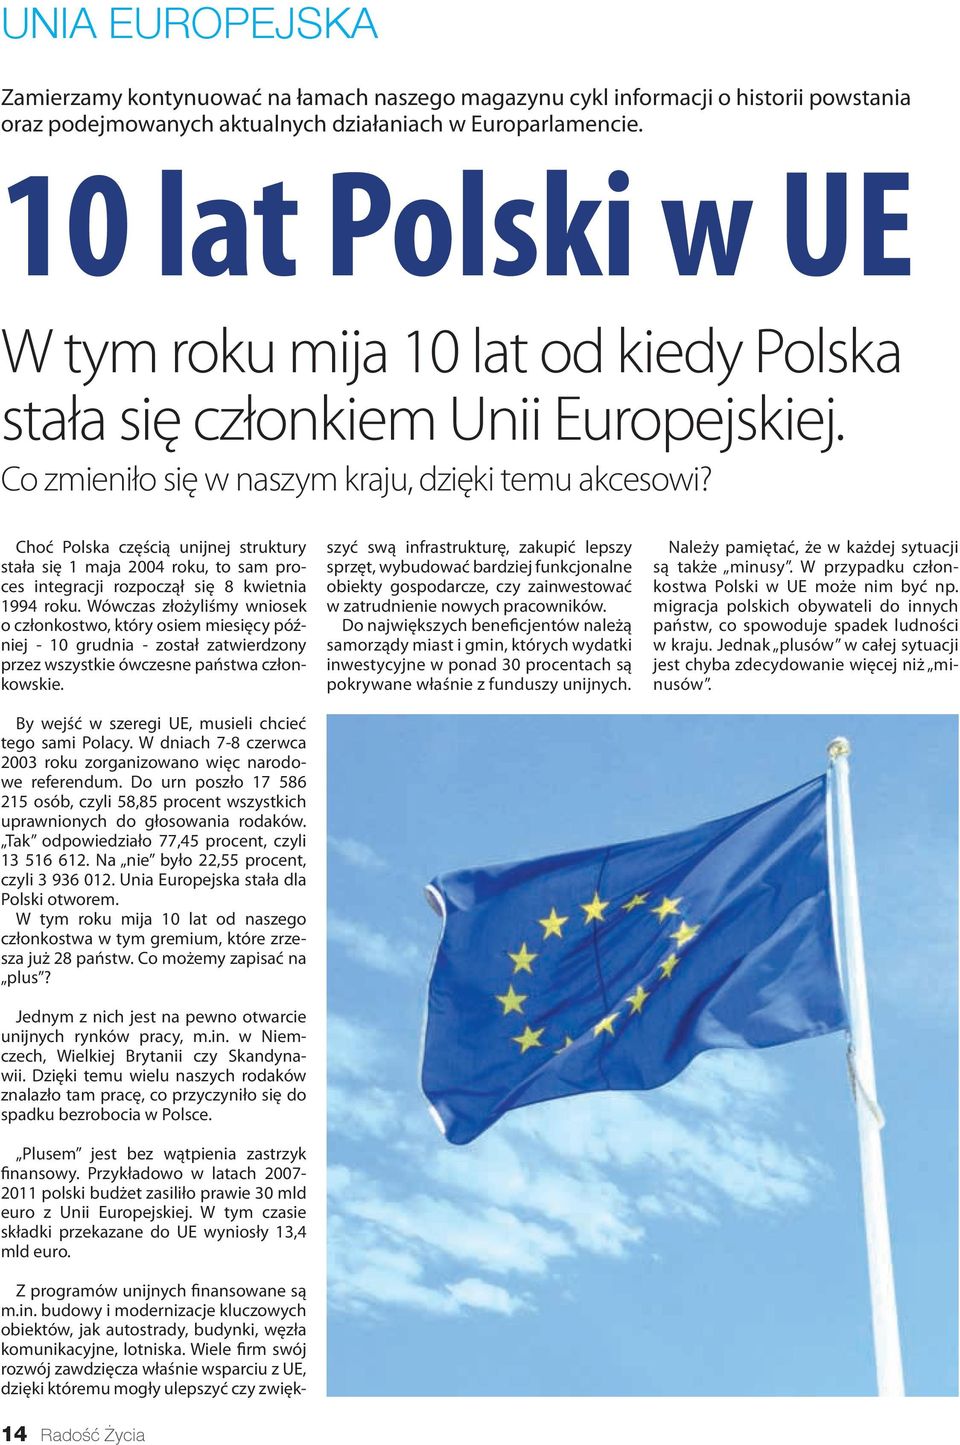 Choć Polska częścią unijnej struktury stała się 1 maja 2004 roku, to sam proces integracji rozpoczął się 8 kwietnia 1994 roku.